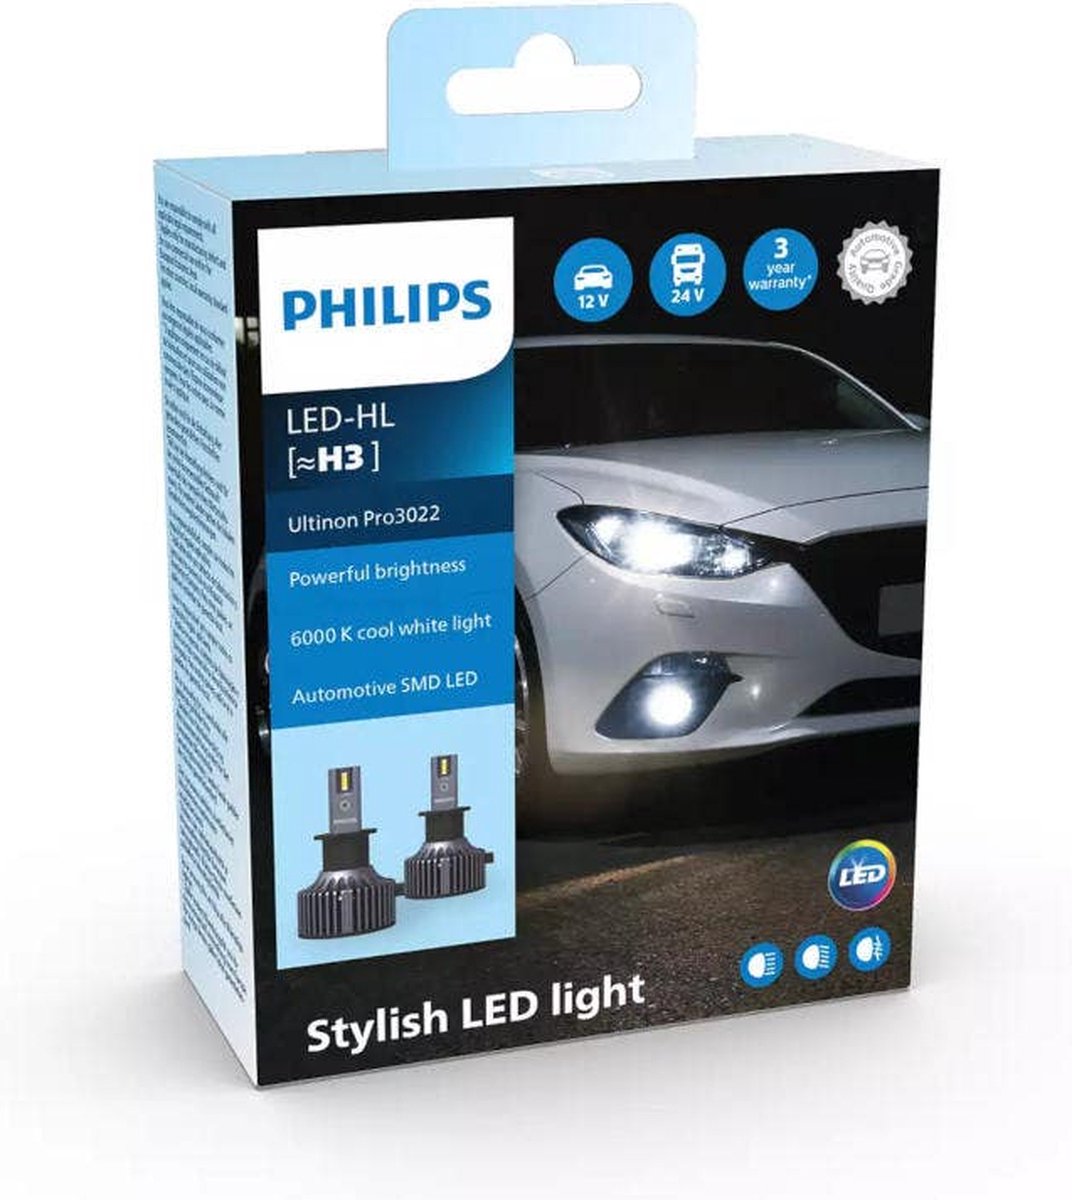 Philips Ultinon Pro3022 LED-HL H3 set LUM11336U3022X2